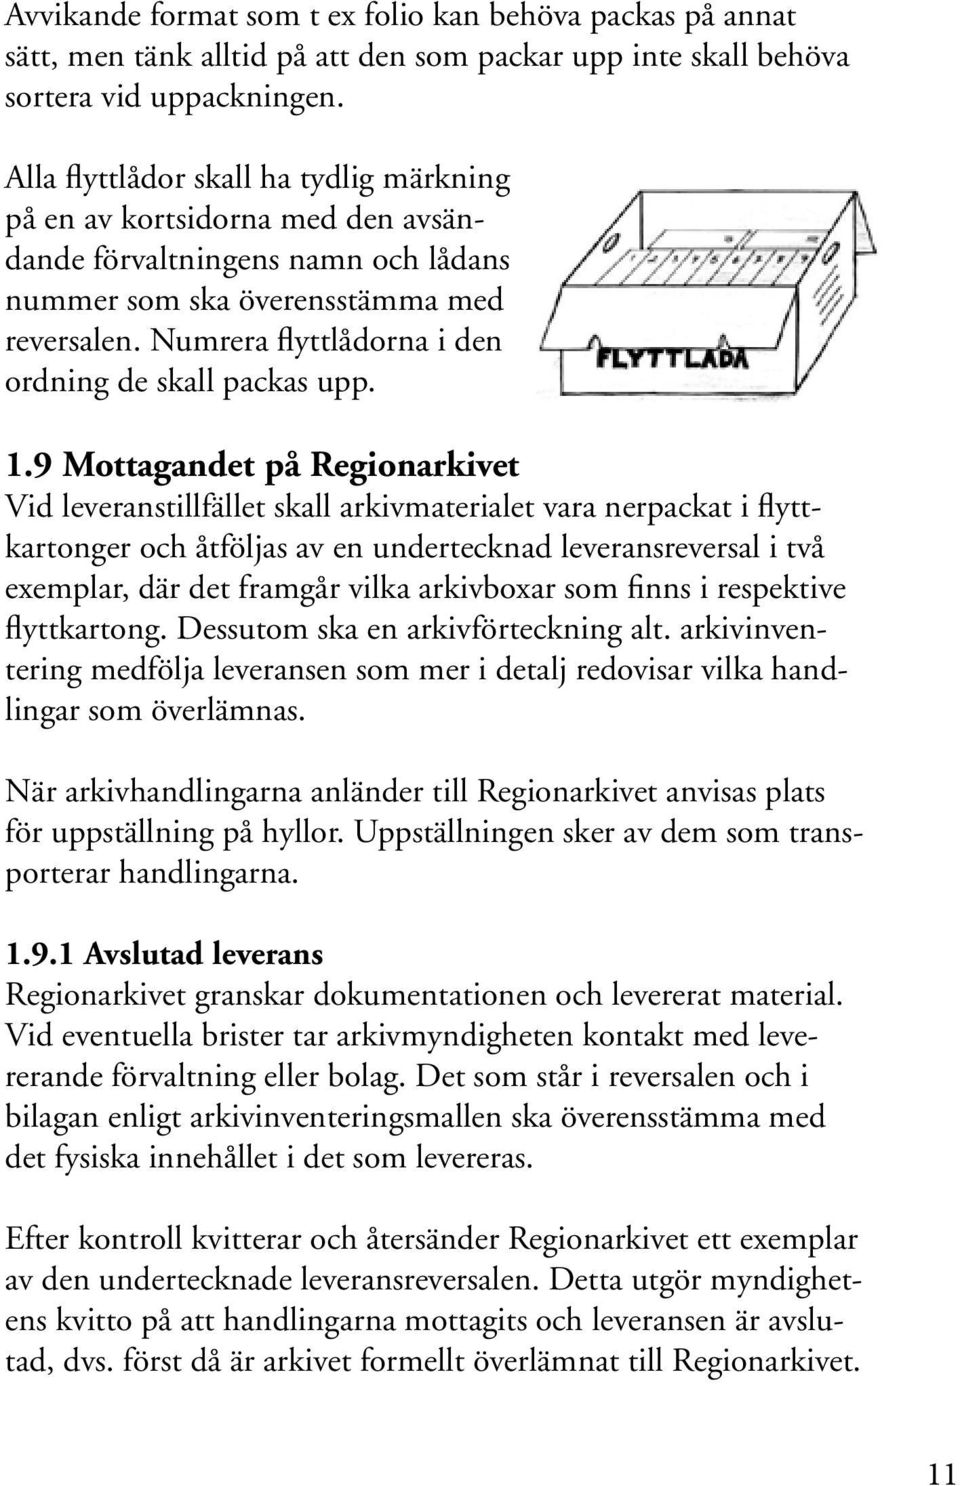 ATT LEVERERA ARKIVHANDLINGAR. en handledning för myndigheter i Västra  Götalandsregionen och Göteborgs Stad - PDF Gratis nedladdning